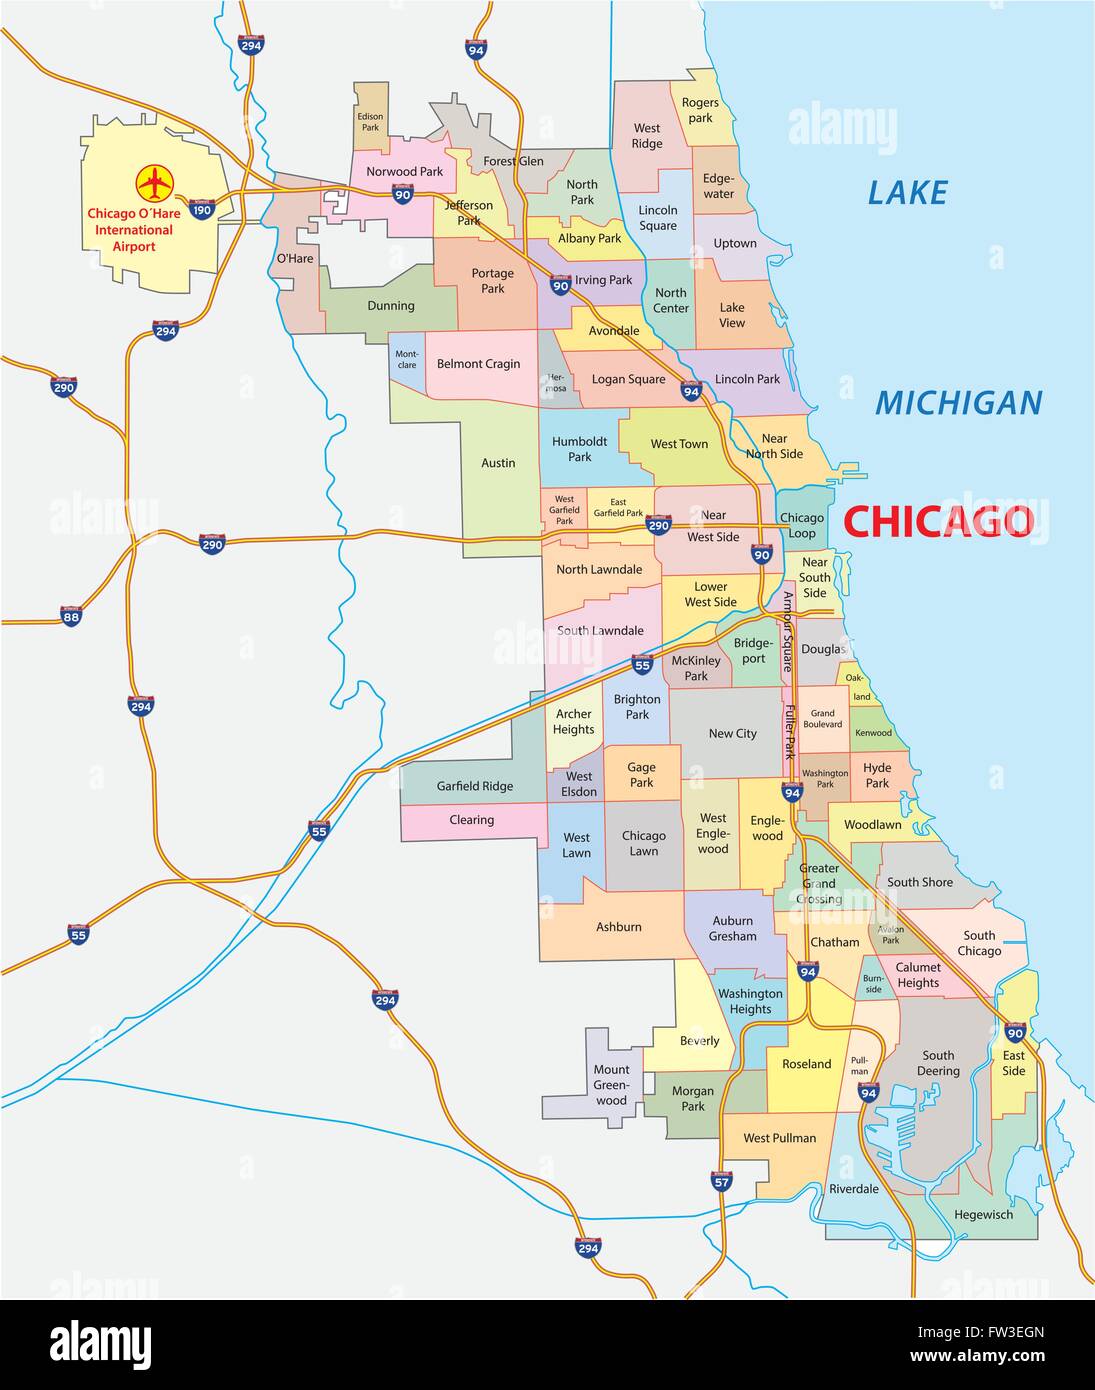 chicago road and neighborhood map Stock Vector Image & Art - Alamy